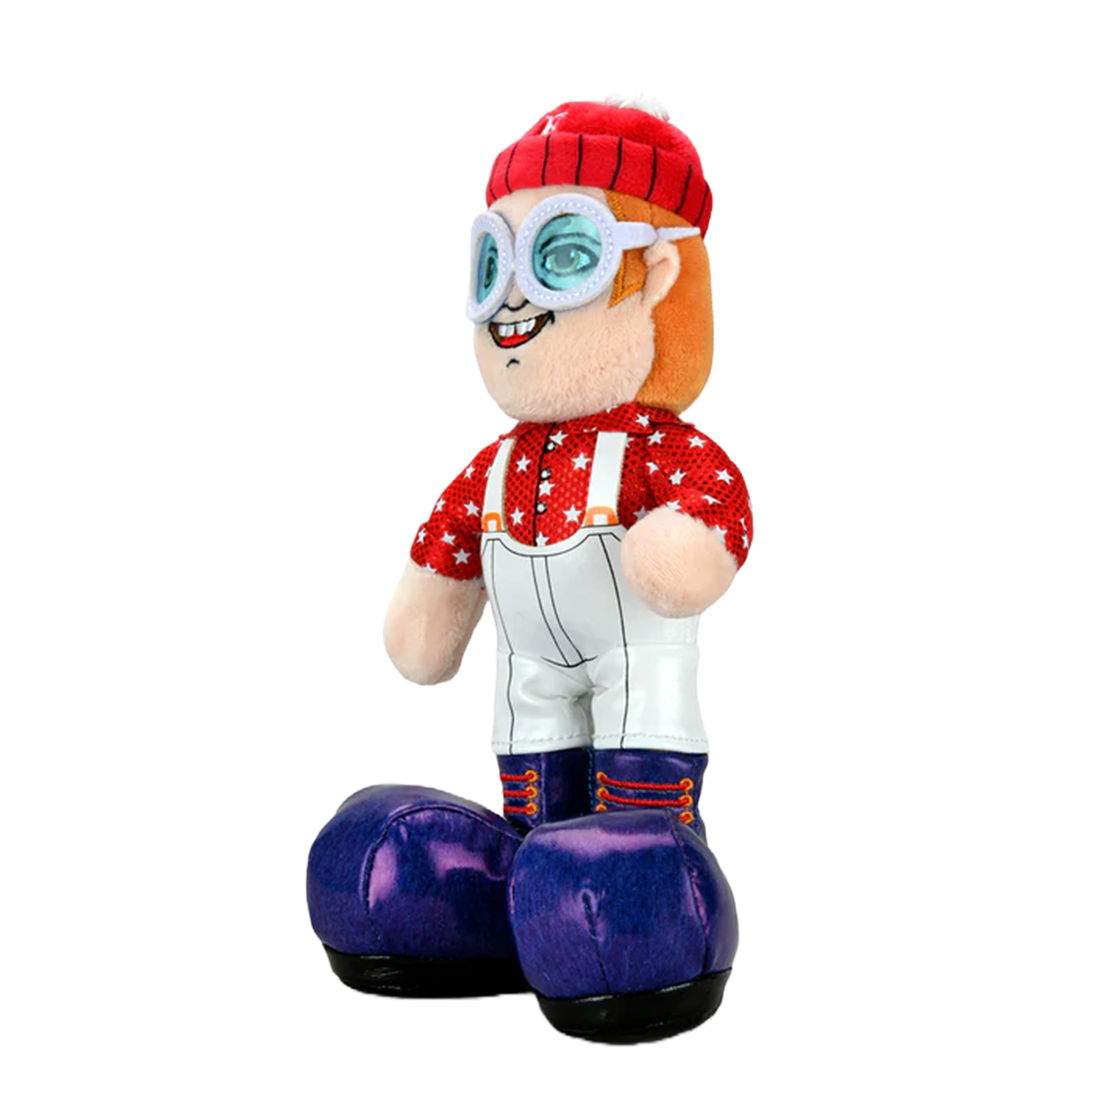 Kid Robot x Elton John 8” Phunny Plush “Pinball Wizard” Edition Angle